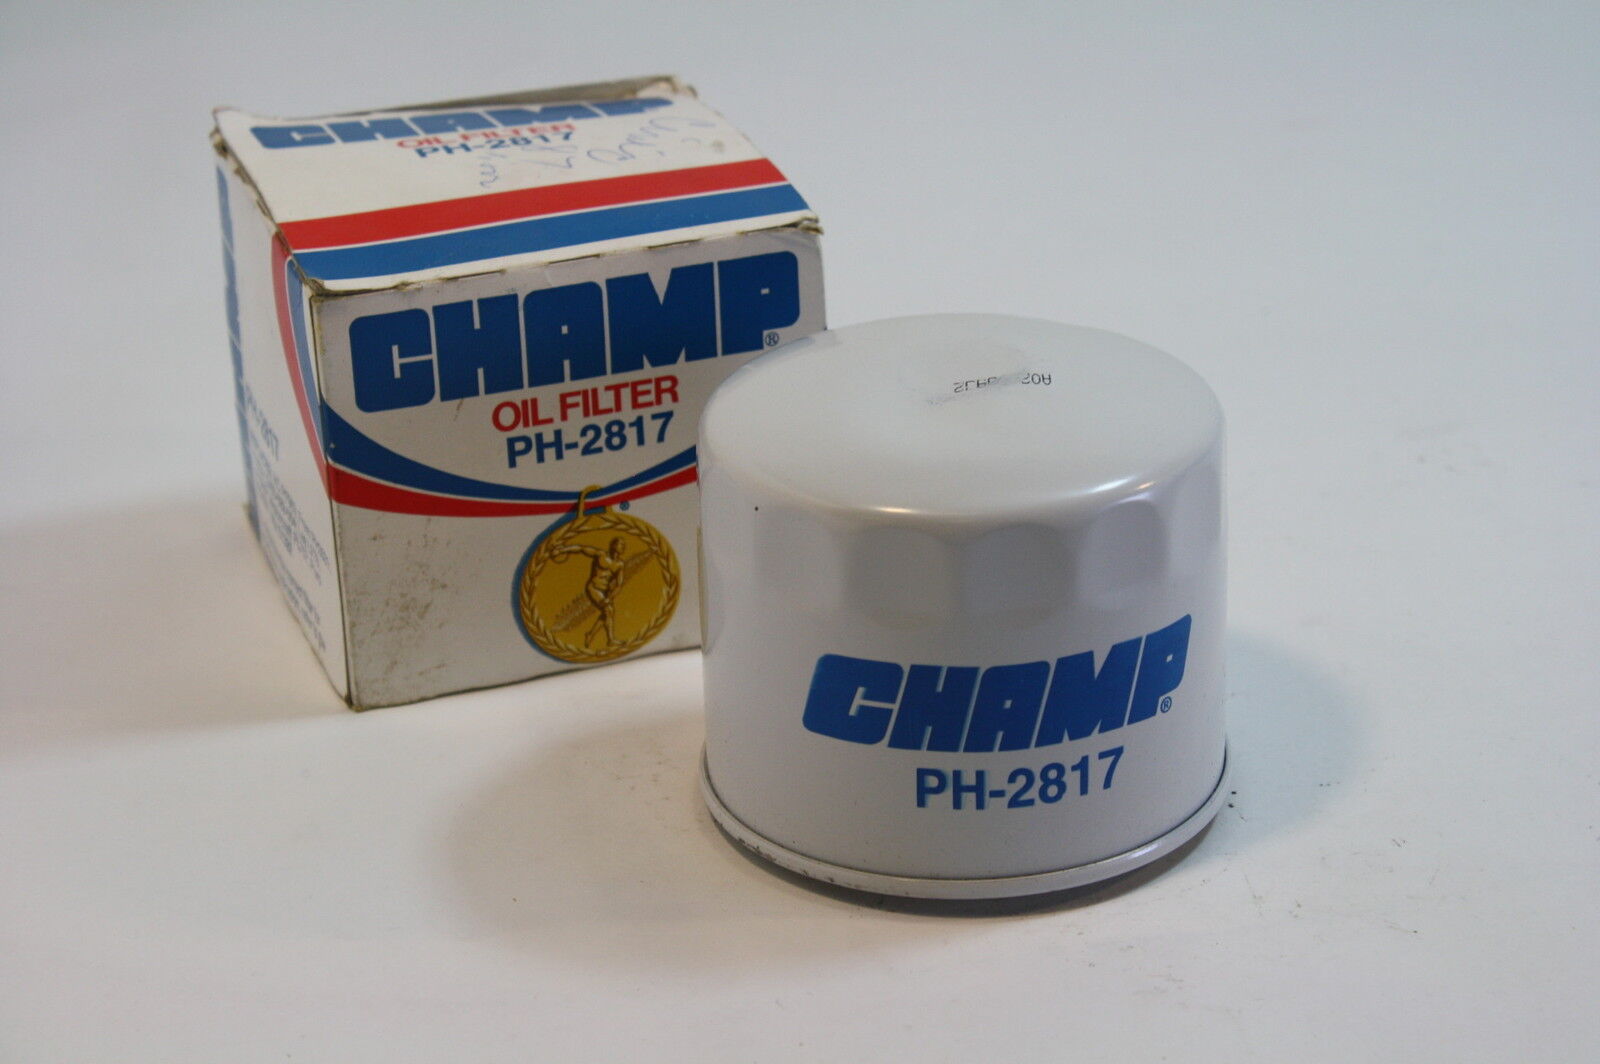 champ oil filter ph-2817